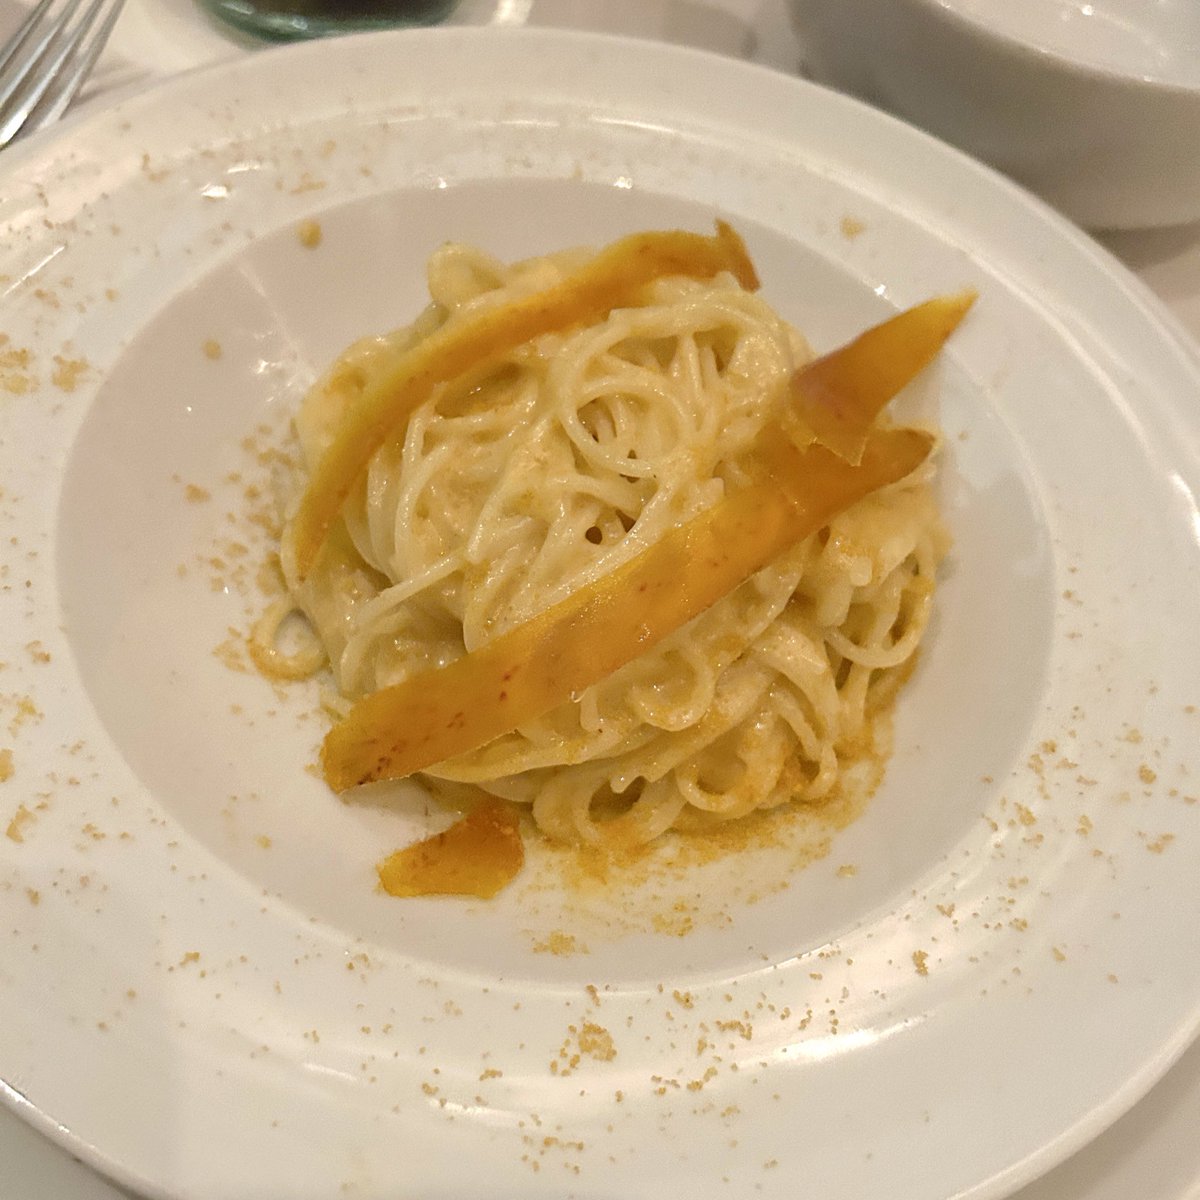 📍Olivomare
Victoria駅にあるイタリアンレストラン。名物のカラスミパスタはクリーミーで、パウダー以外にスライスも載っているのでかなり堪能しました。2枚目はウニのディップ的なもので、これがとんでもなく美味しかったです。濃厚旨味尽くしだったのでボディ強めのサルディーニャの白と共に🍾